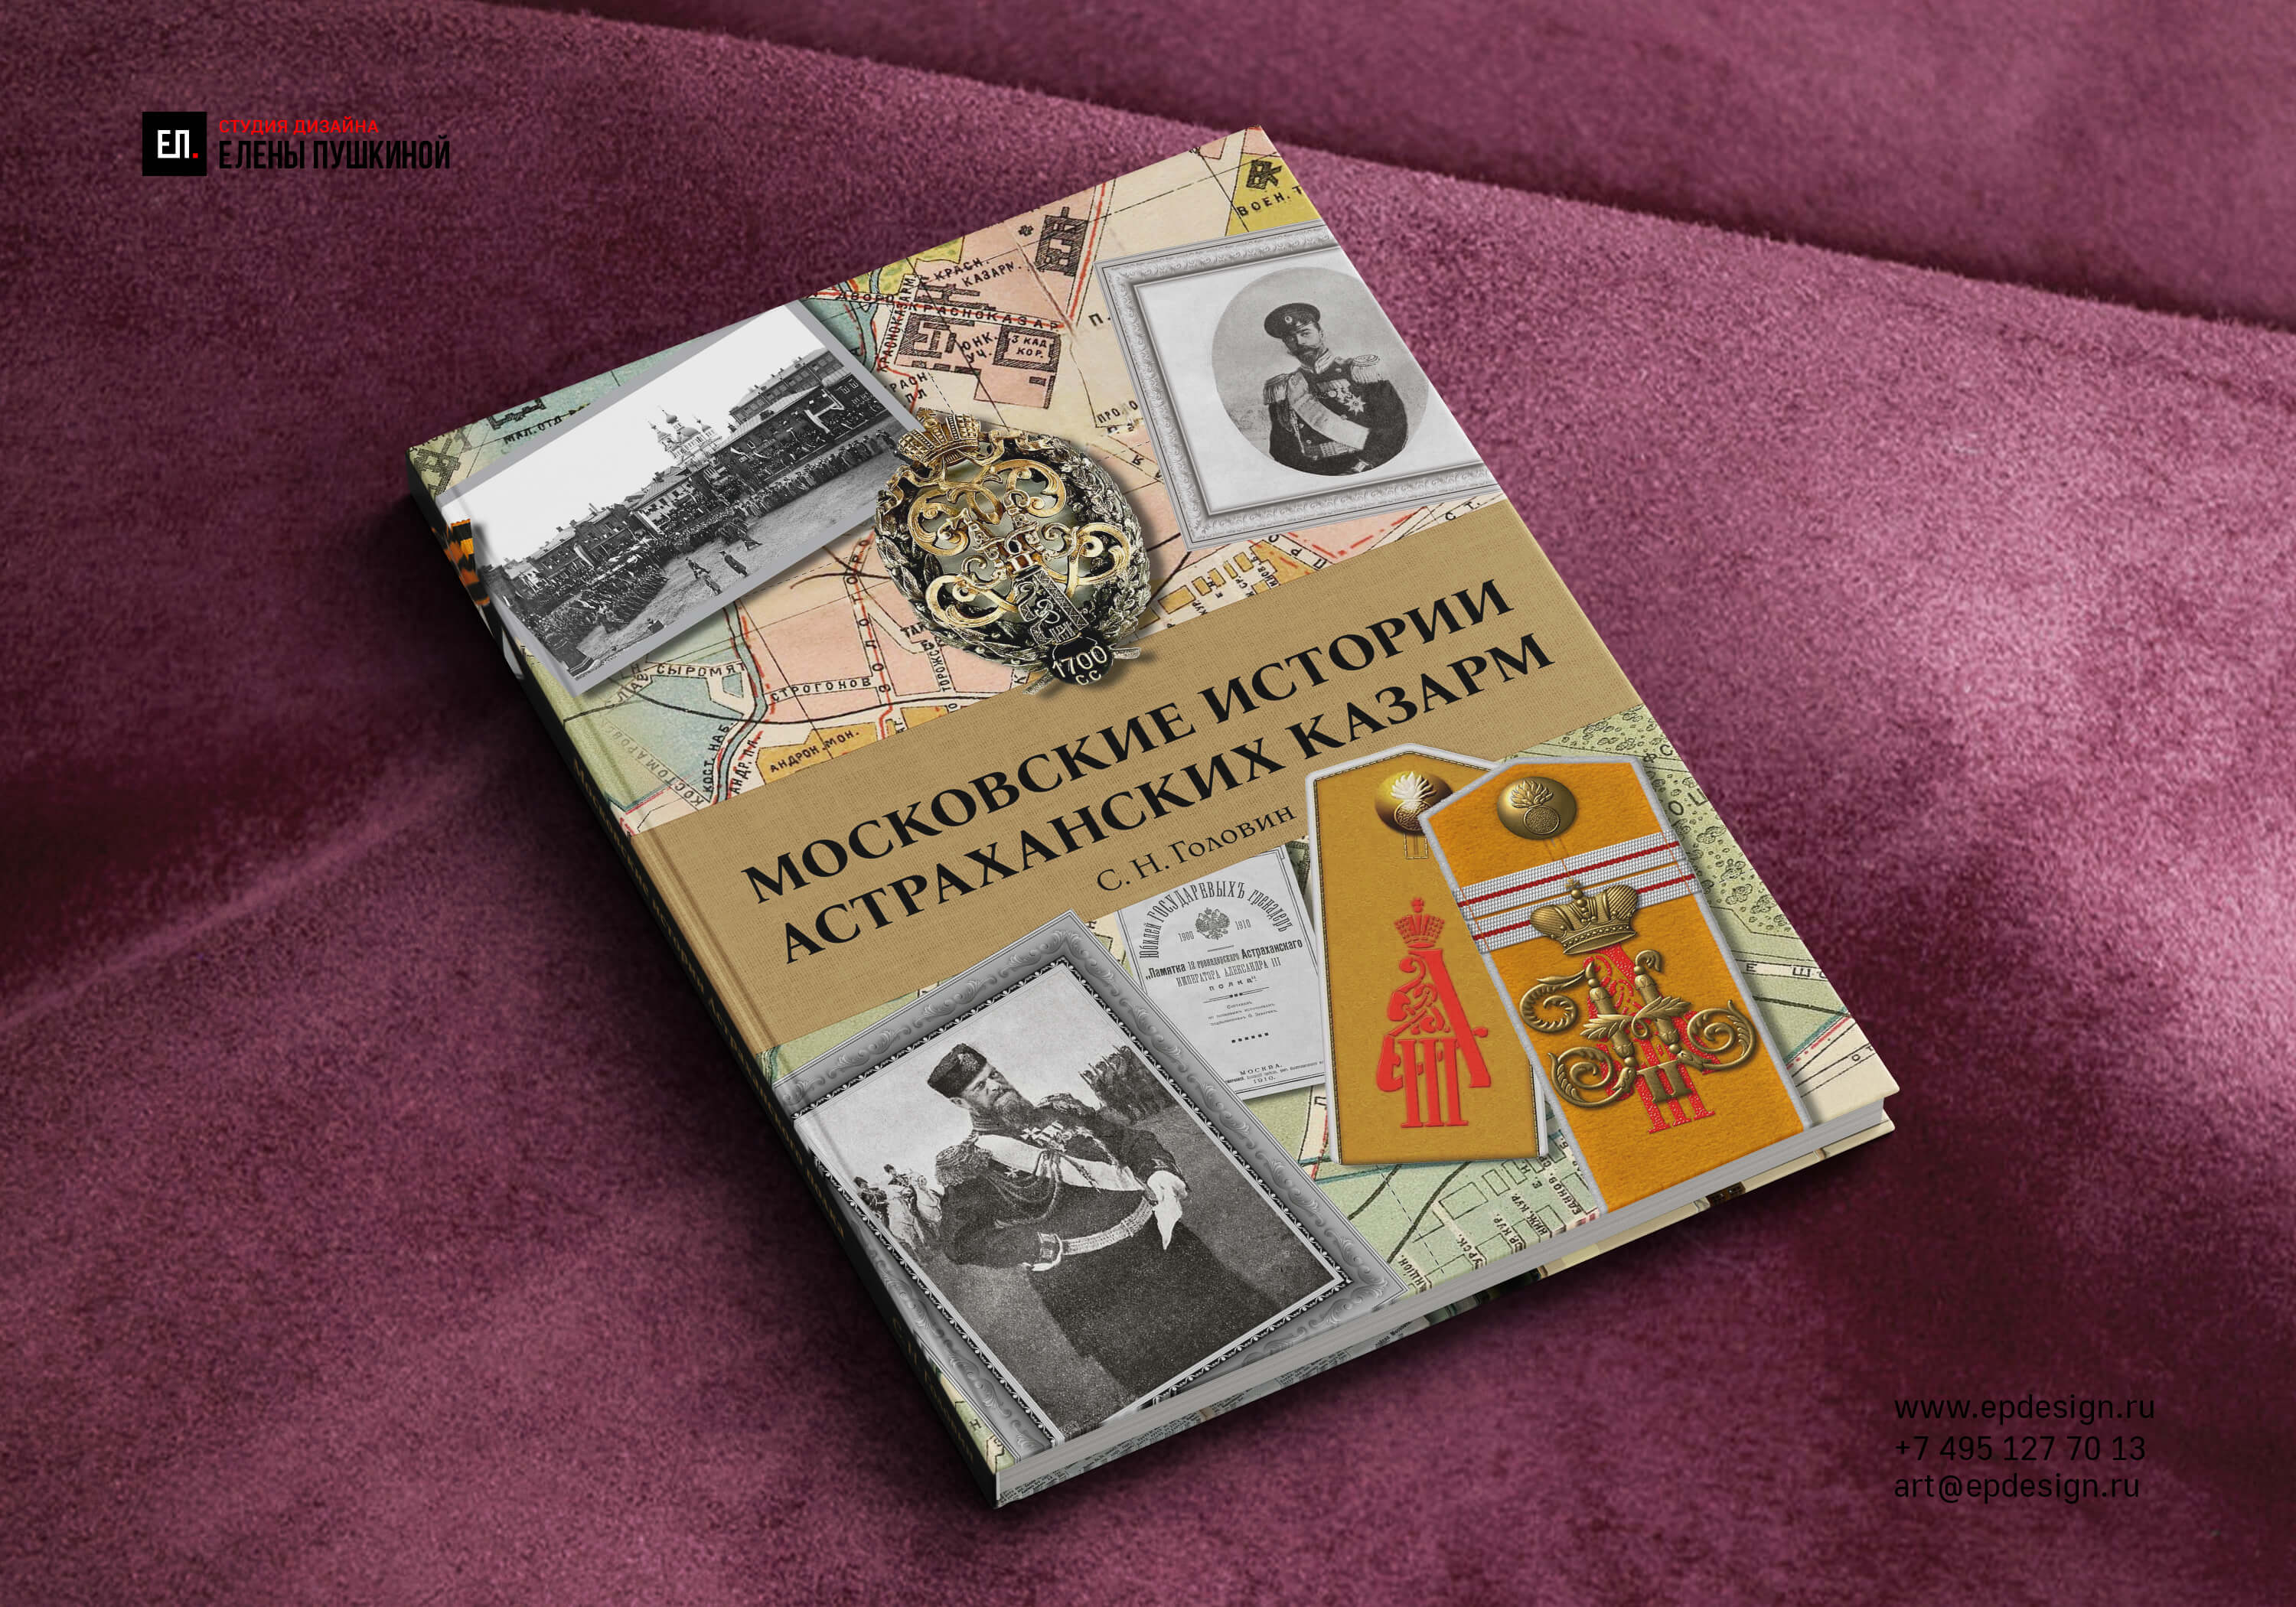 Книга «Московские истории Астраханских казарм» Создание книг Портфолио